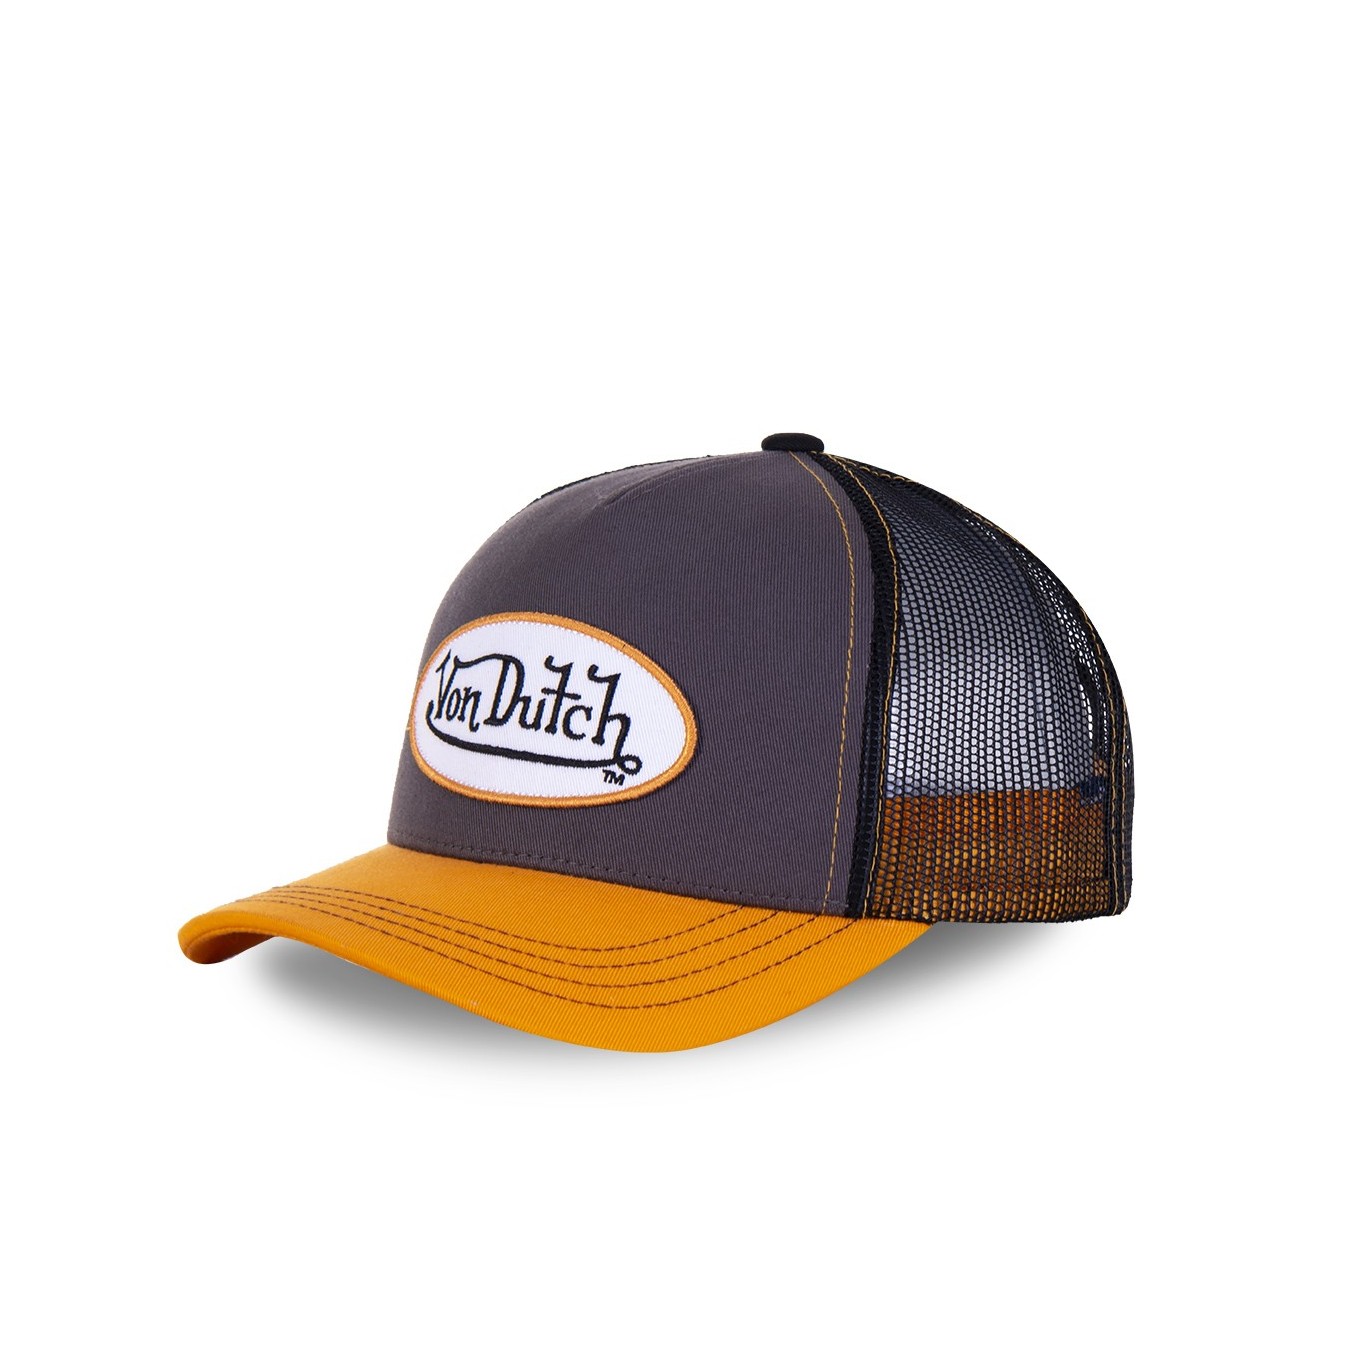 Men's Von Dutch grey and orange Col baseball cap - Von Dutch